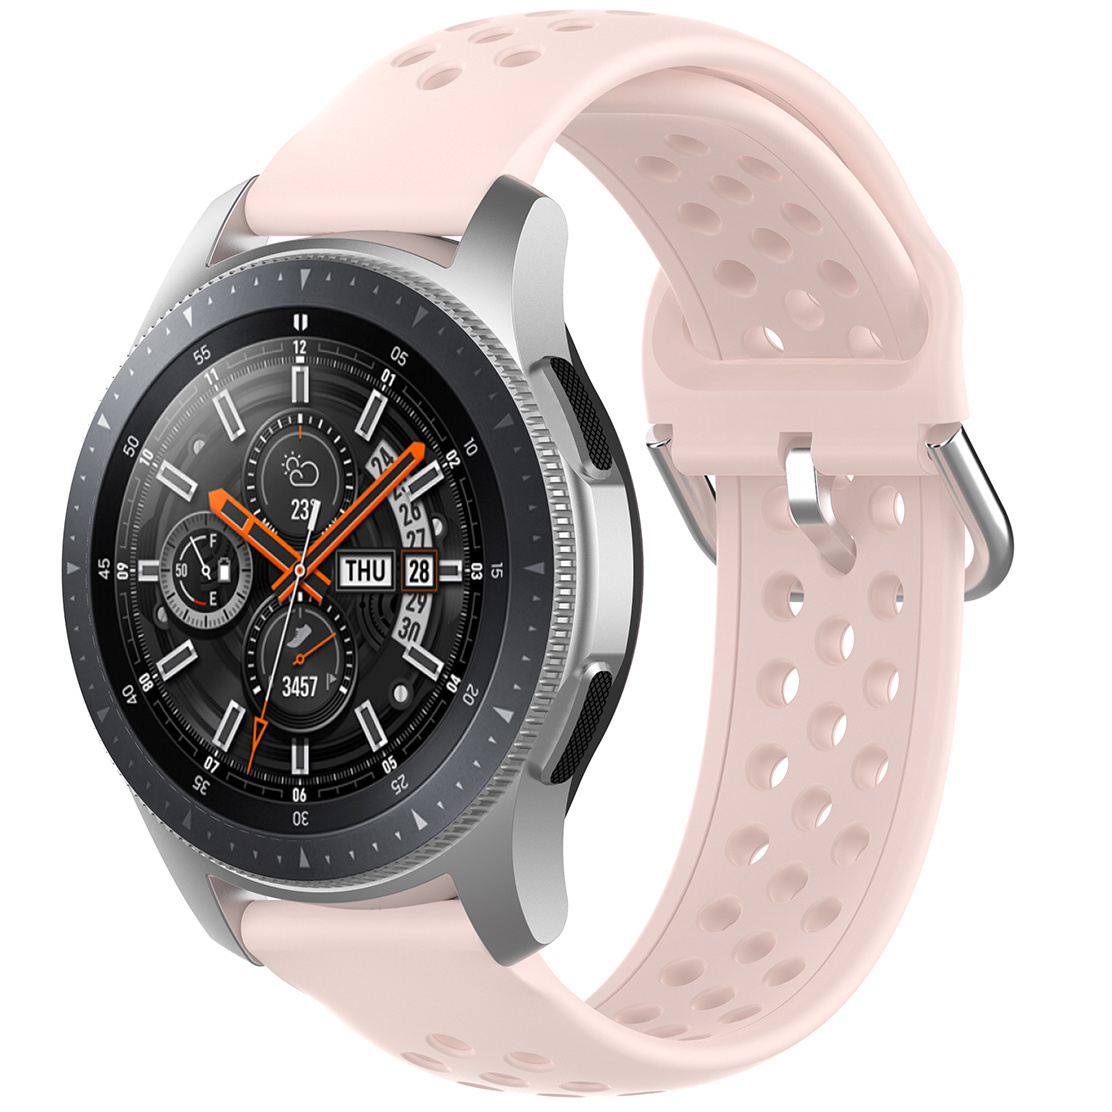 Correa deportiva doble hebilla para el Samsung Galaxy Watch - rosa